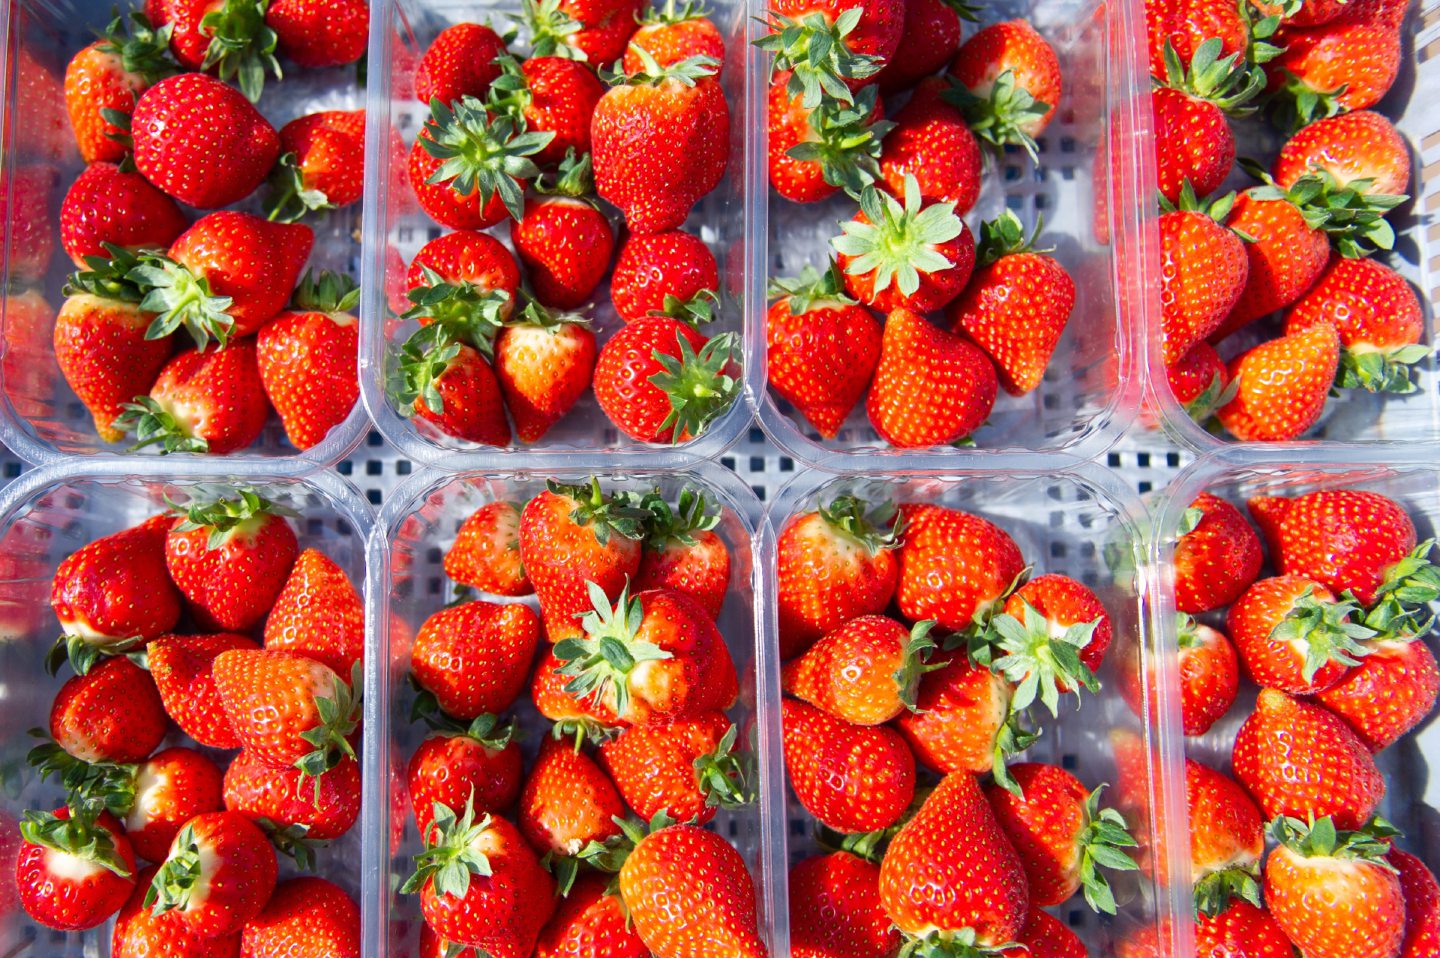 Barnsmuir Farm strawberries.